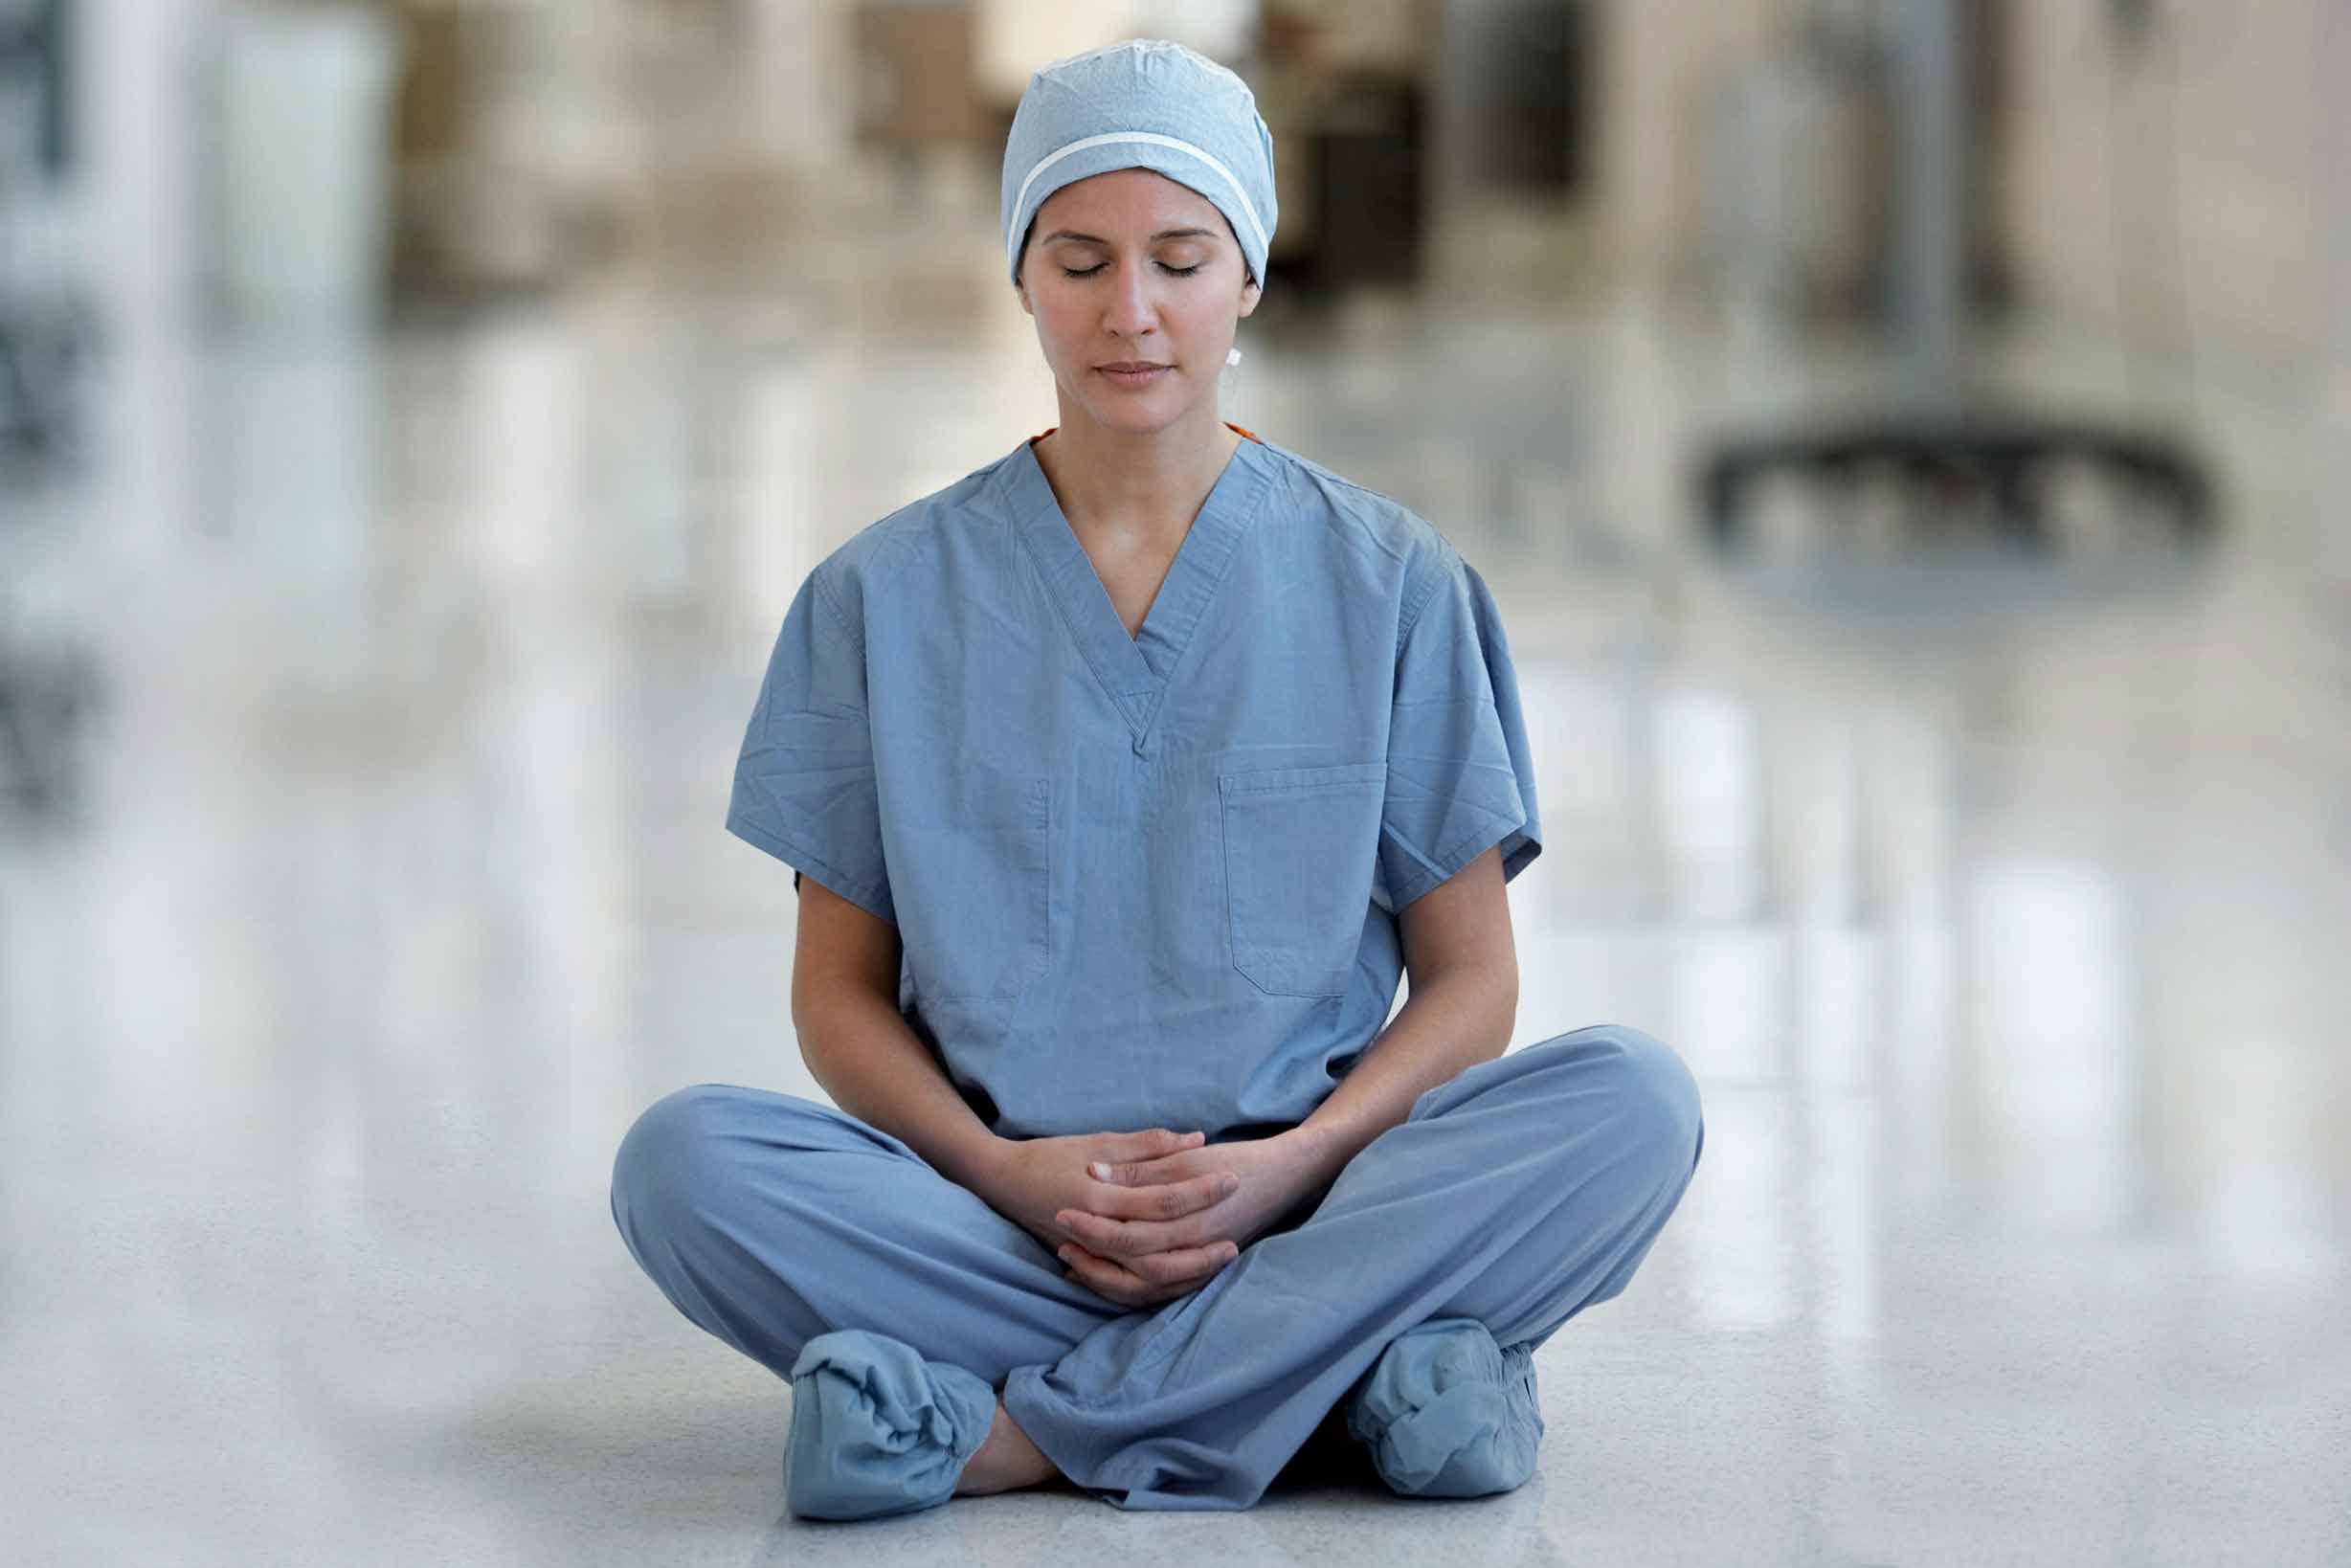 Nurse meditating in a hospital hallway